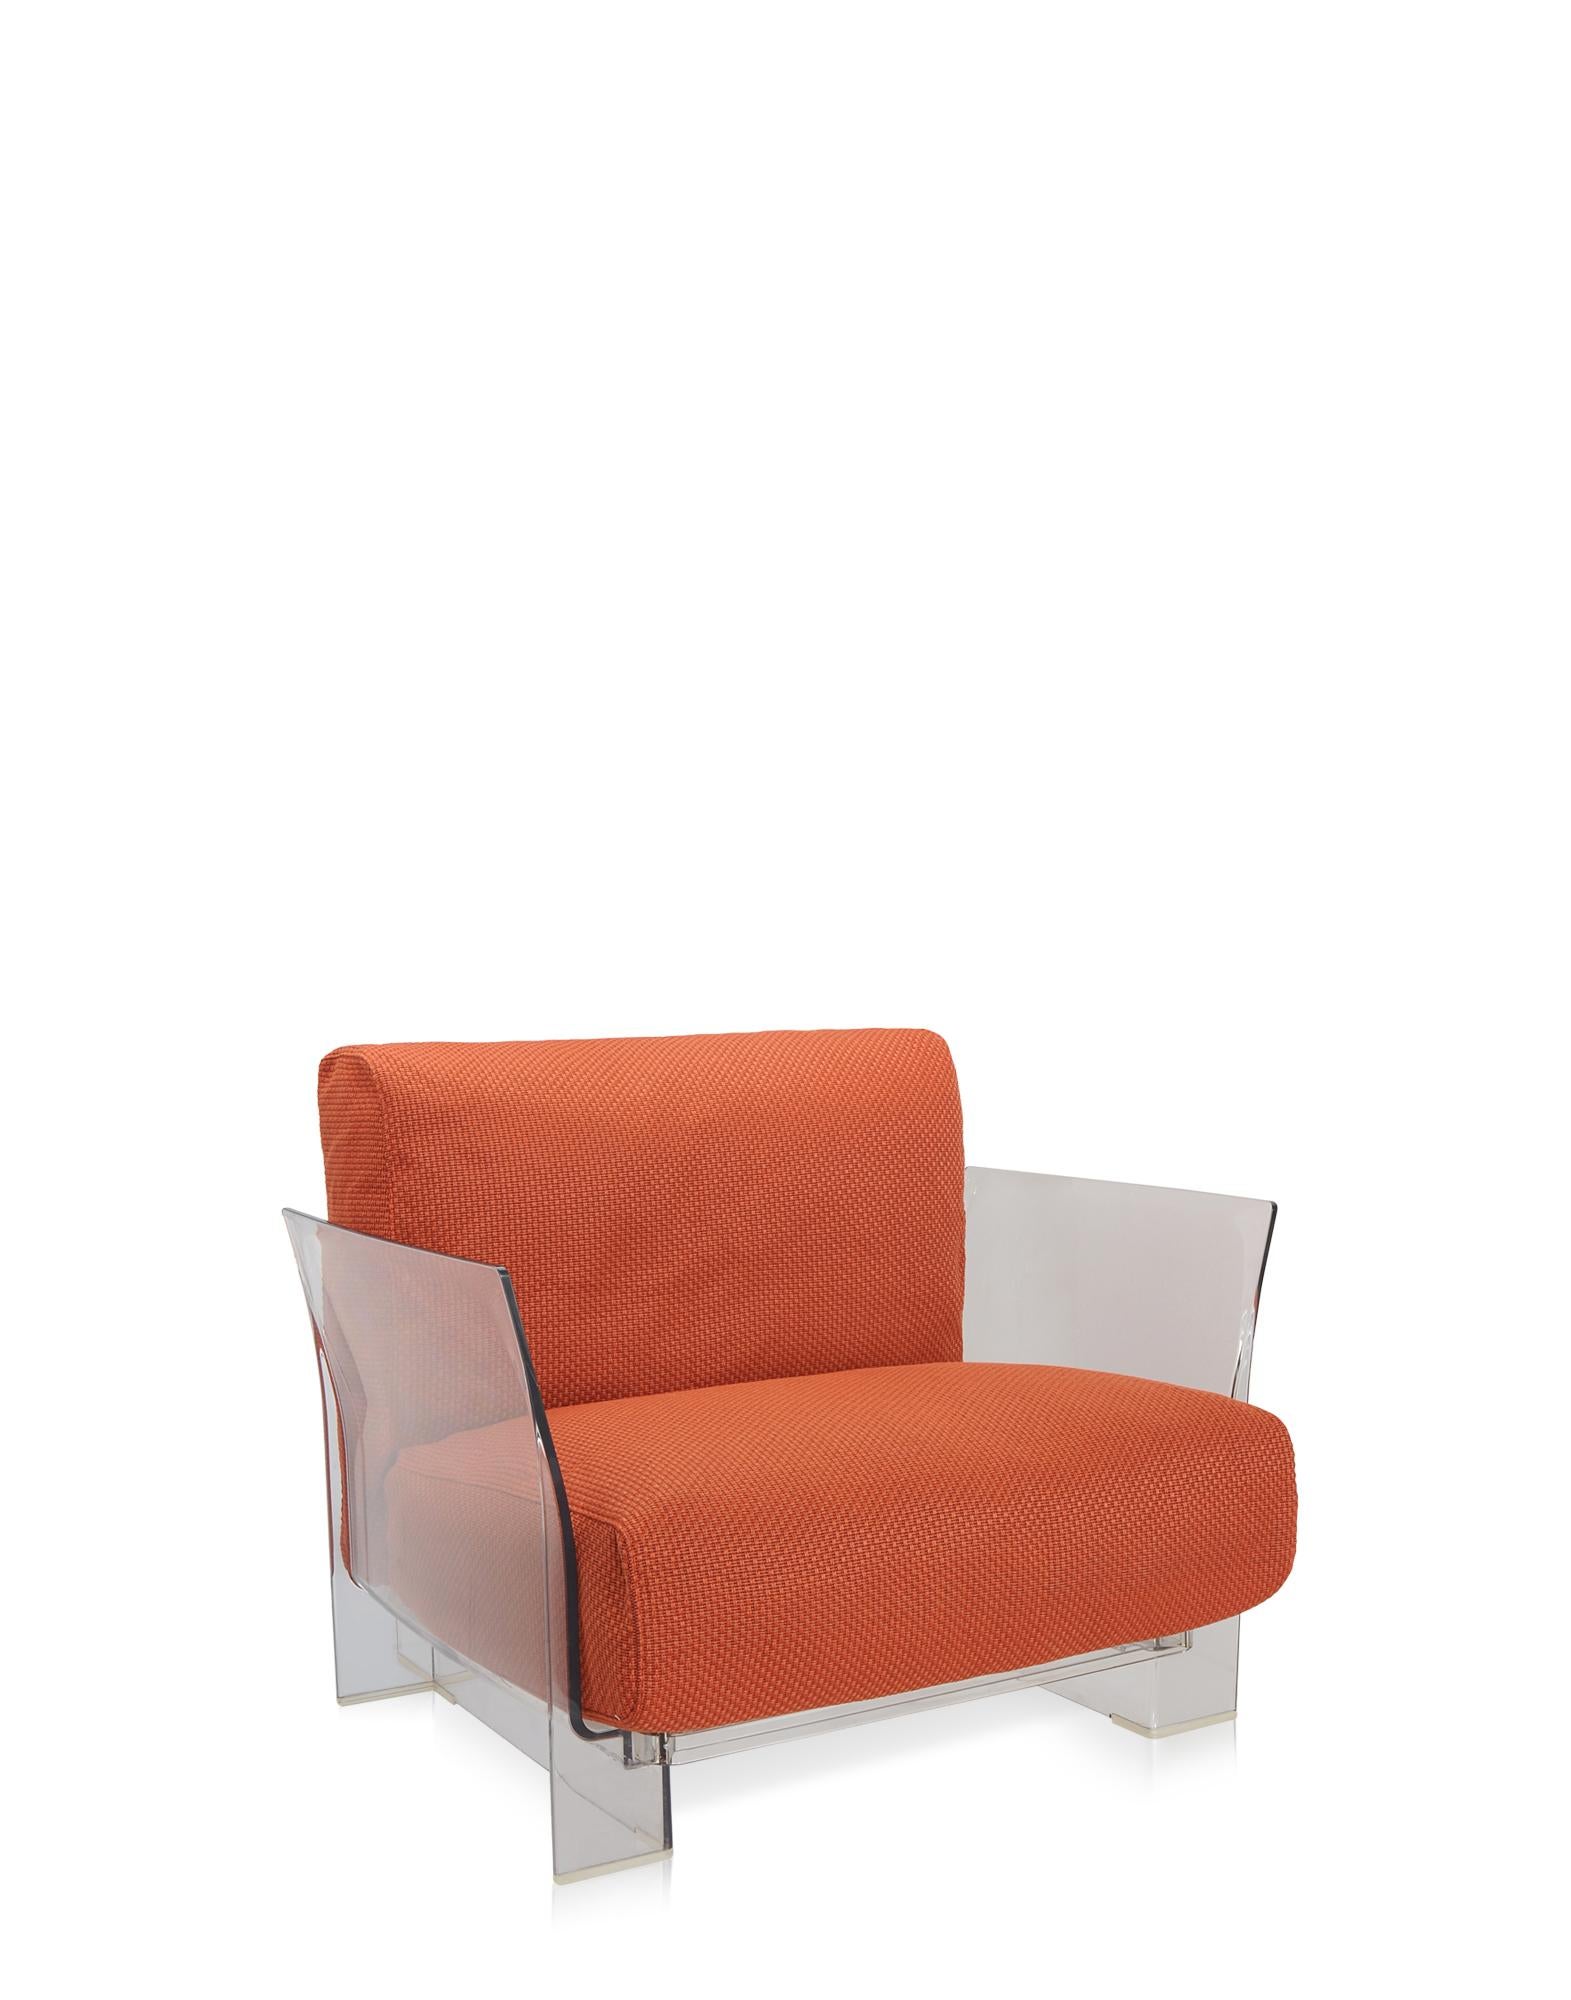 Pop outdoor ist das modulare Sofa mit flüchtigen Profilen, das sich durch große Sitz- und Rückenkissen auszeichnet, die es weich und bequem machen und aus Stoffen bestehen, die speziell für den Außenbereich konzipiert wurden. 
Die Pop-Kollektion